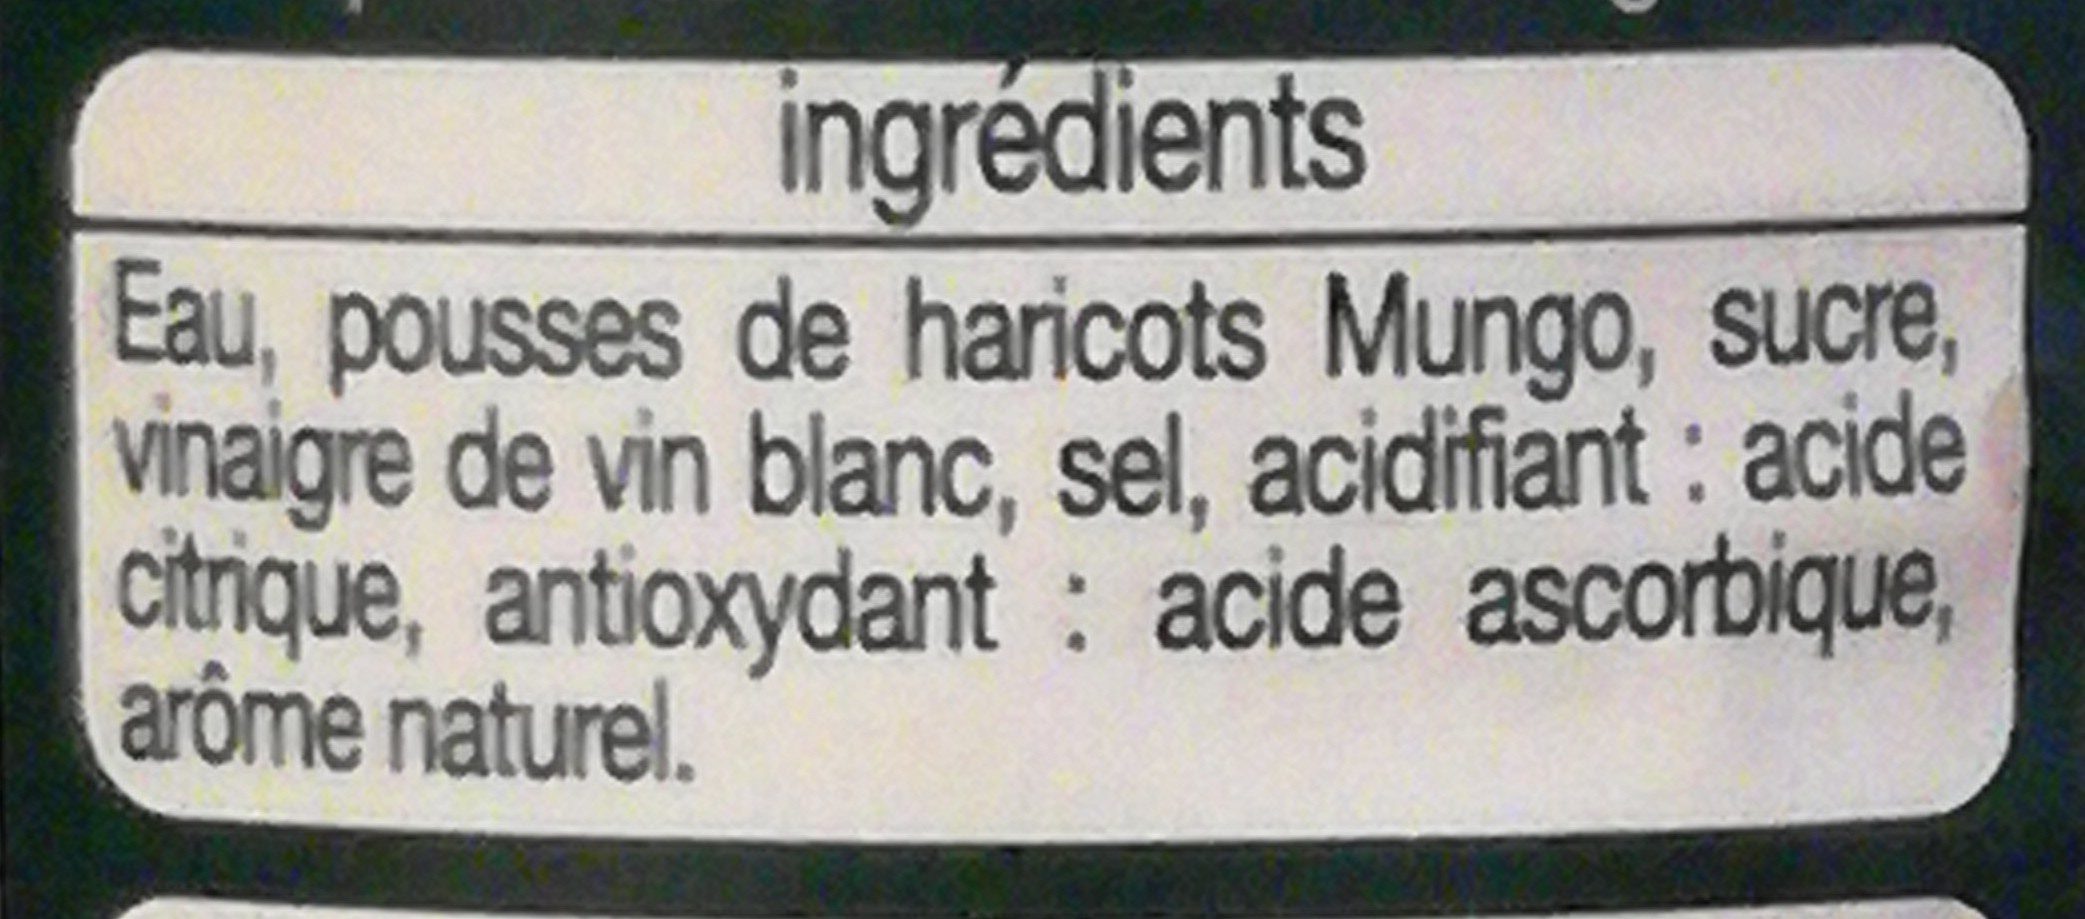 Pousses de haricots Mungo - Ingrédients